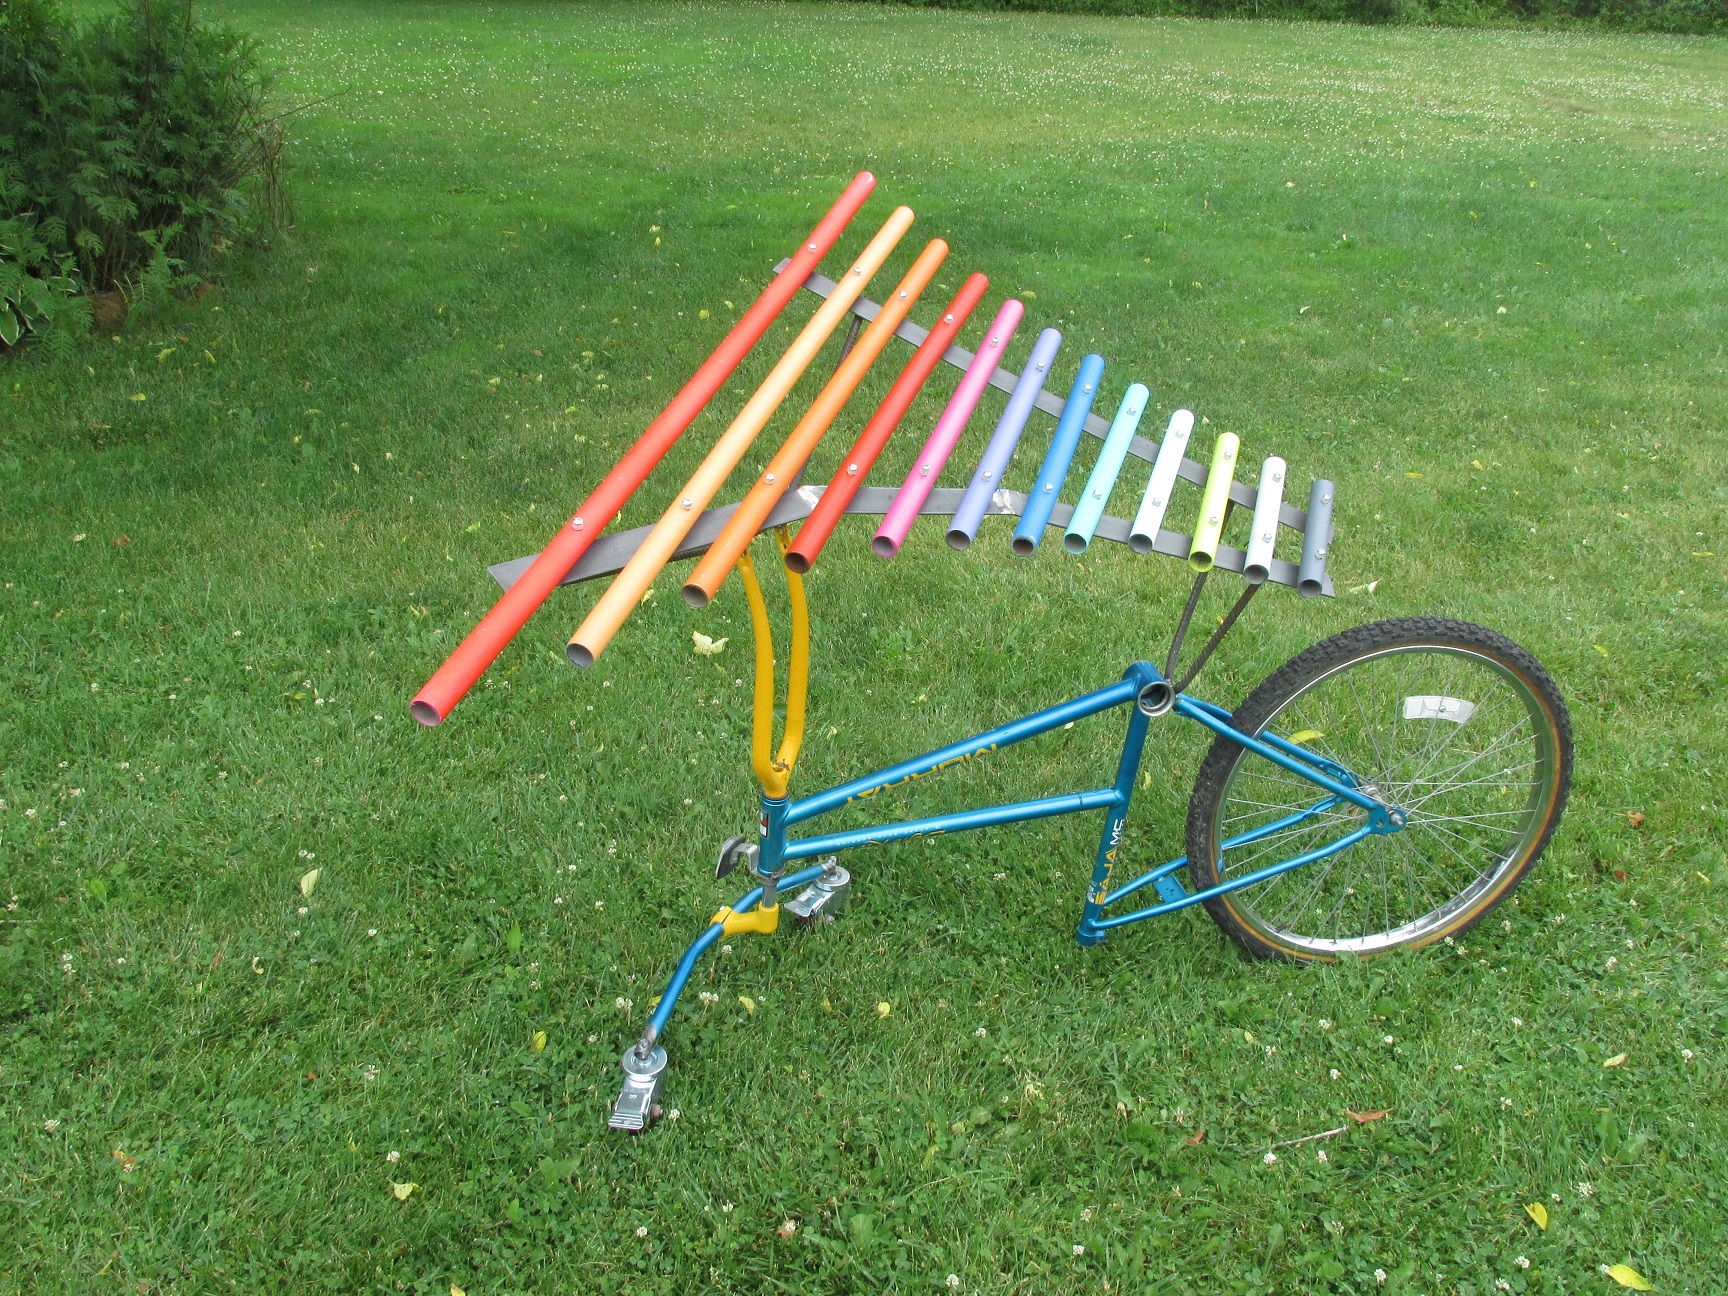 xylophone mounted on a bicycle